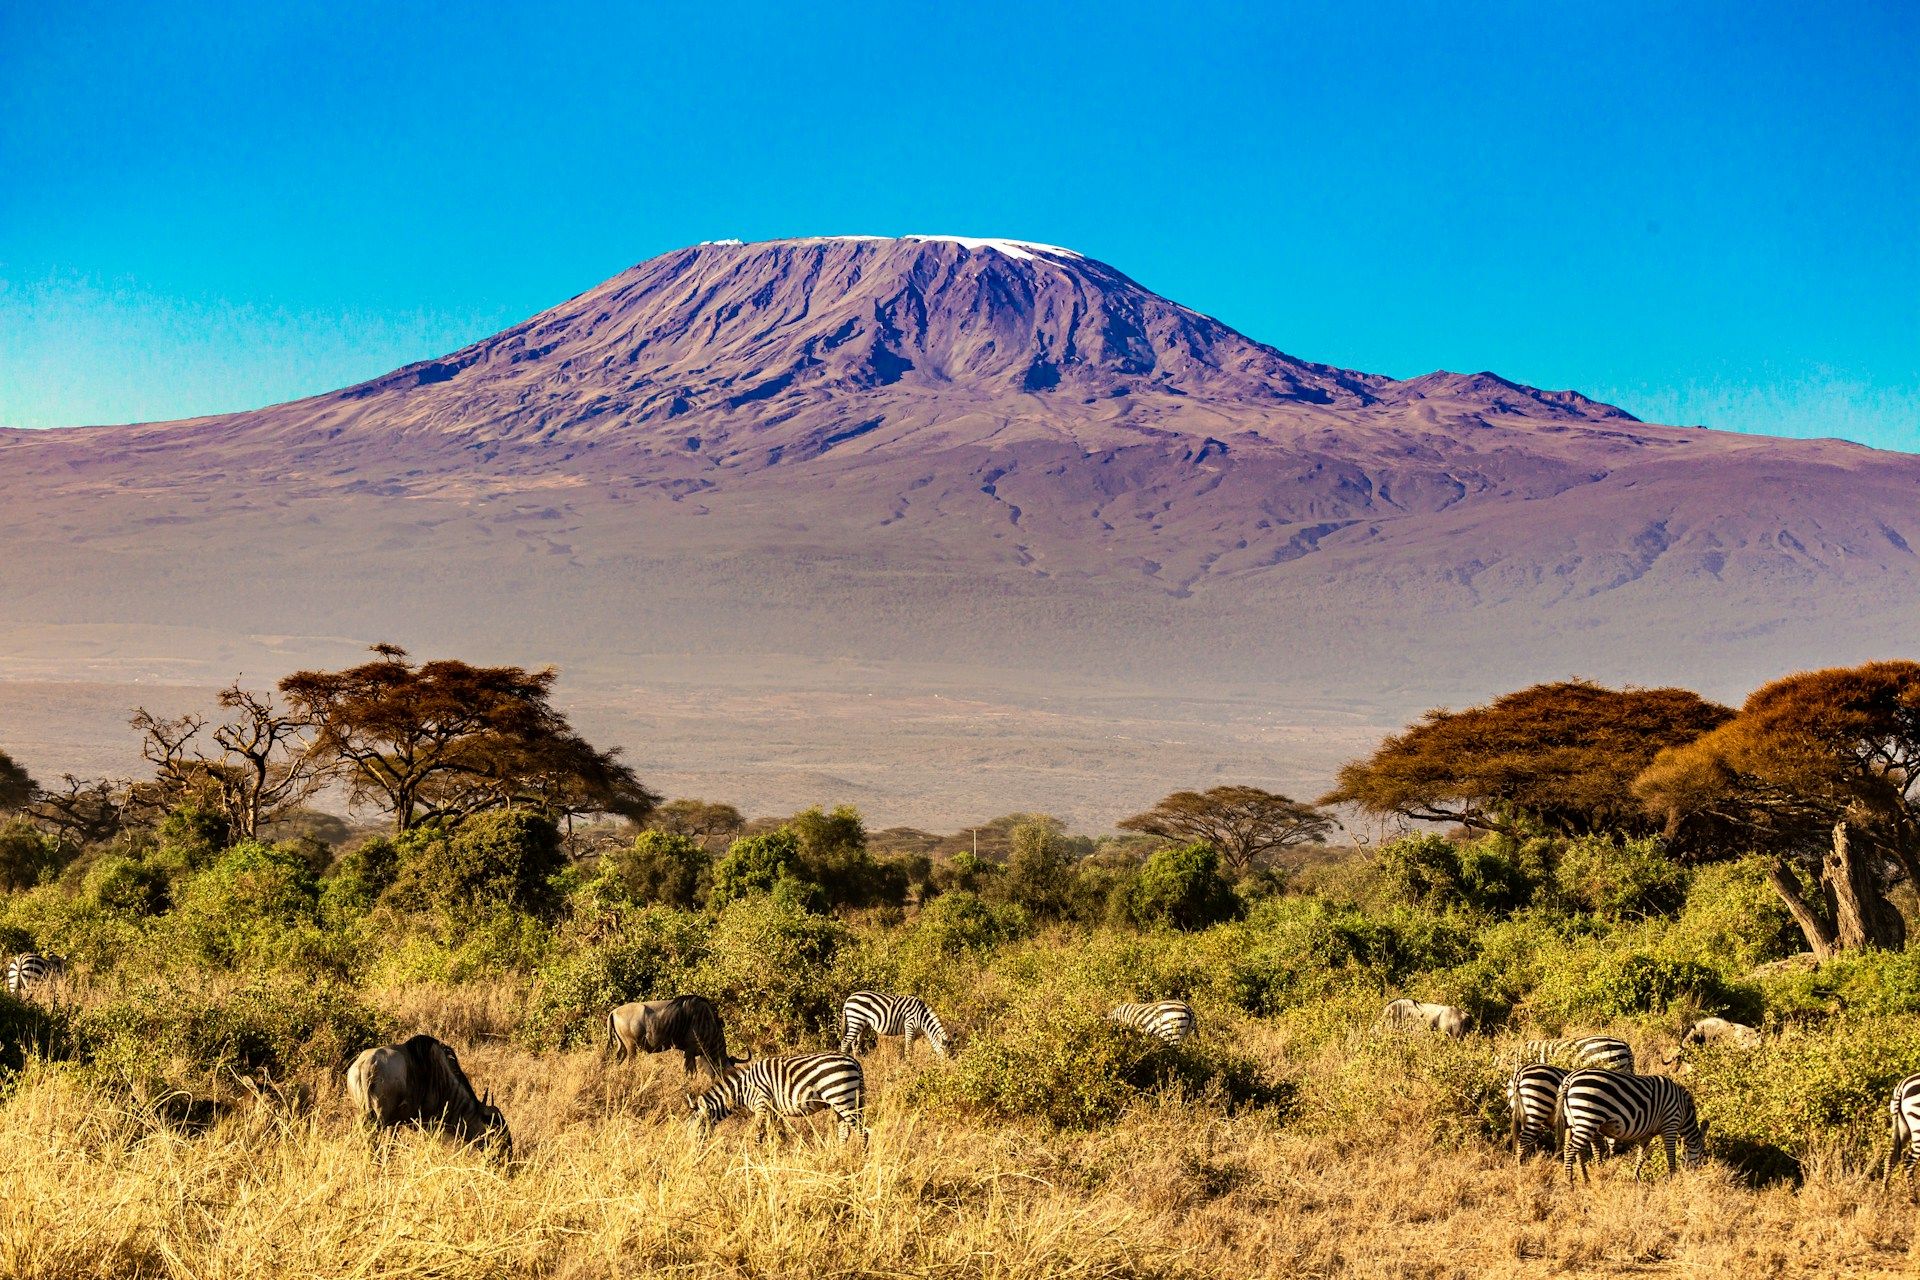 Mount Kilimanjaro's Routes